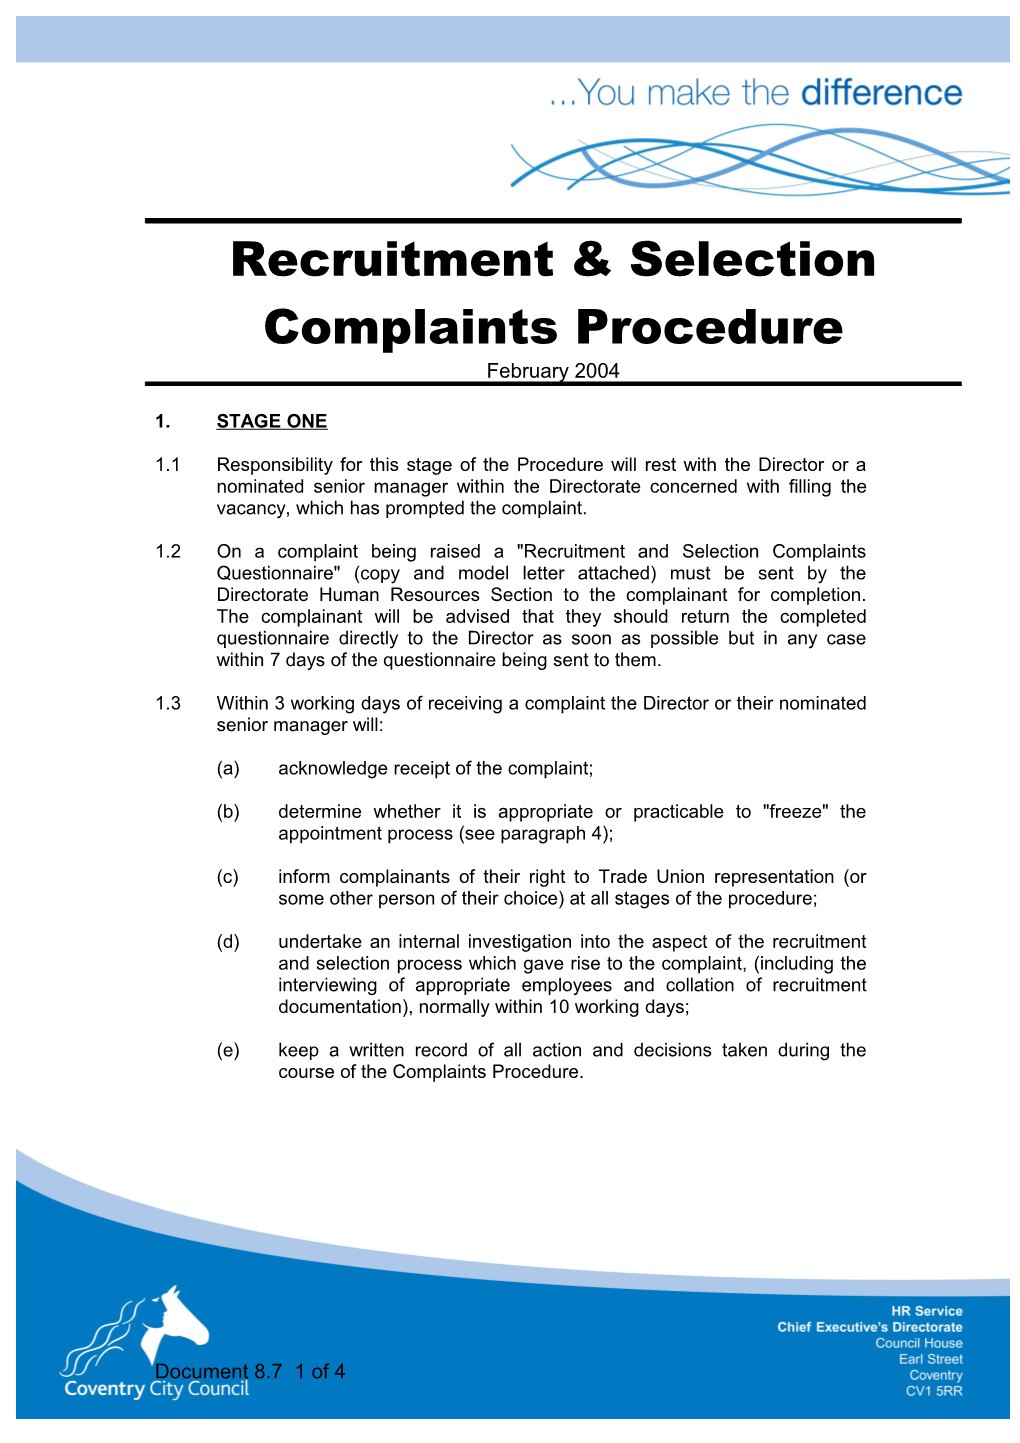 Recruitment & Selection Complaints